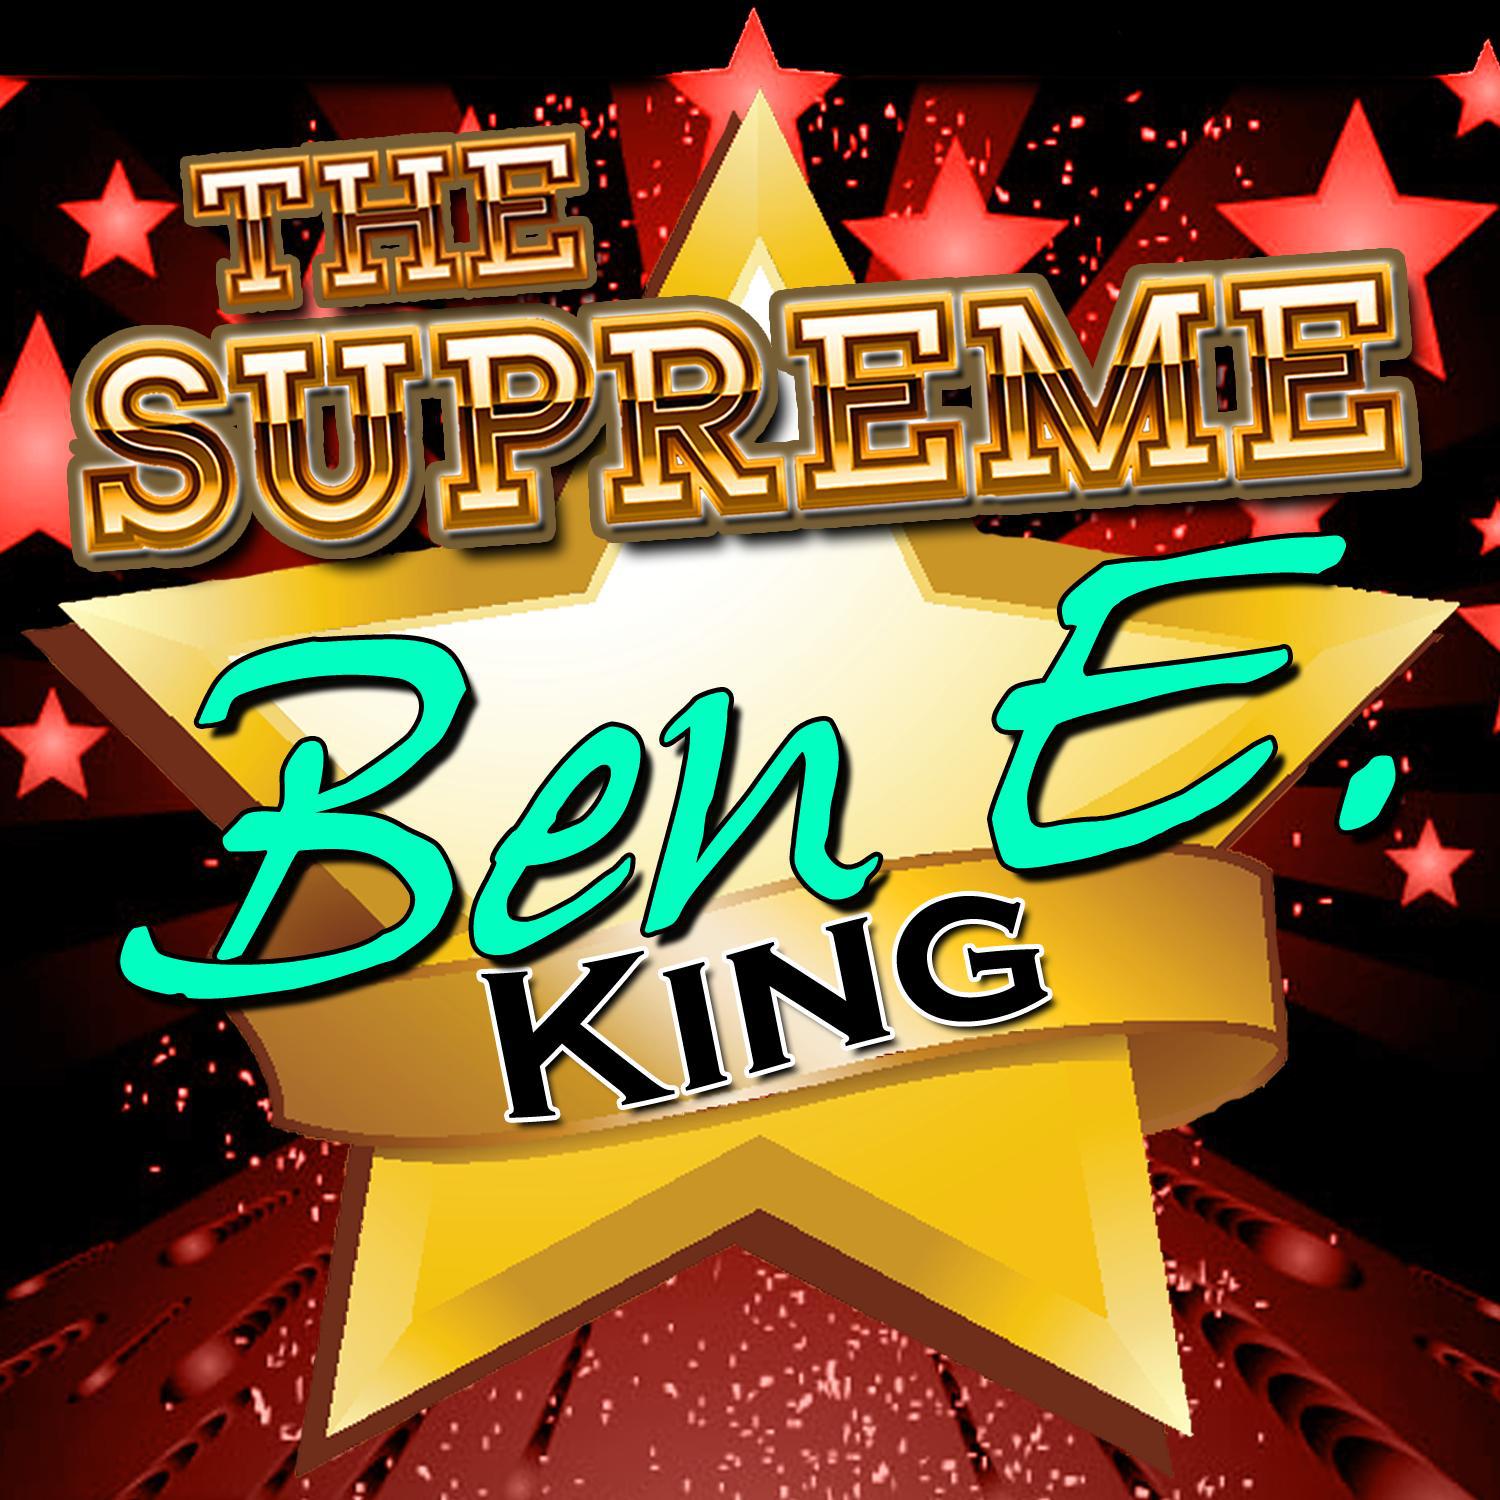 The Supreme Ben E. King